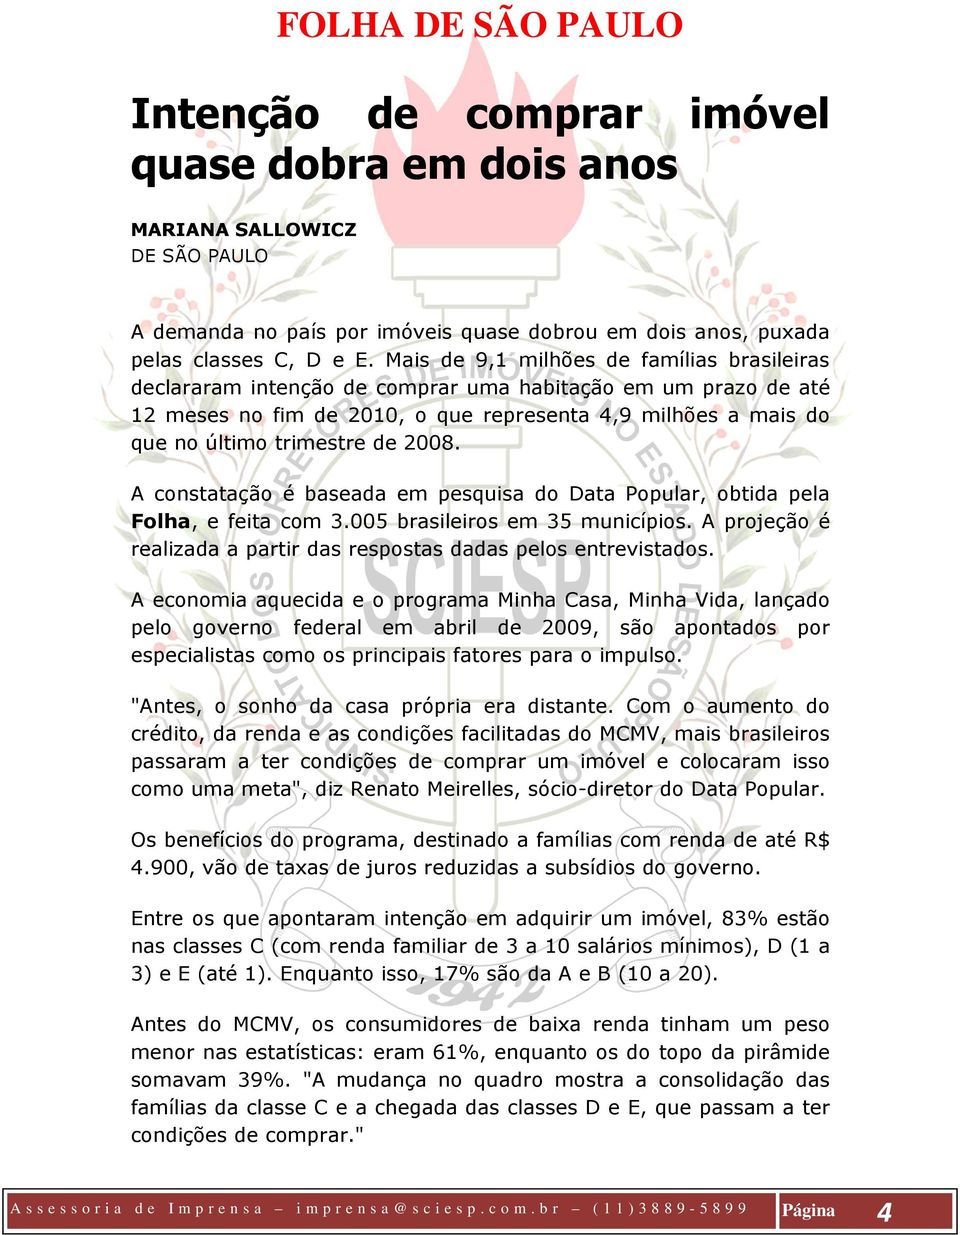 2008. A constatação é baseada em pesquisa do Data Popular, obtida pela Folha, e feita com 3.005 brasileiros em 35 municípios. A projeção é realizada a partir das respostas dadas pelos entrevistados.